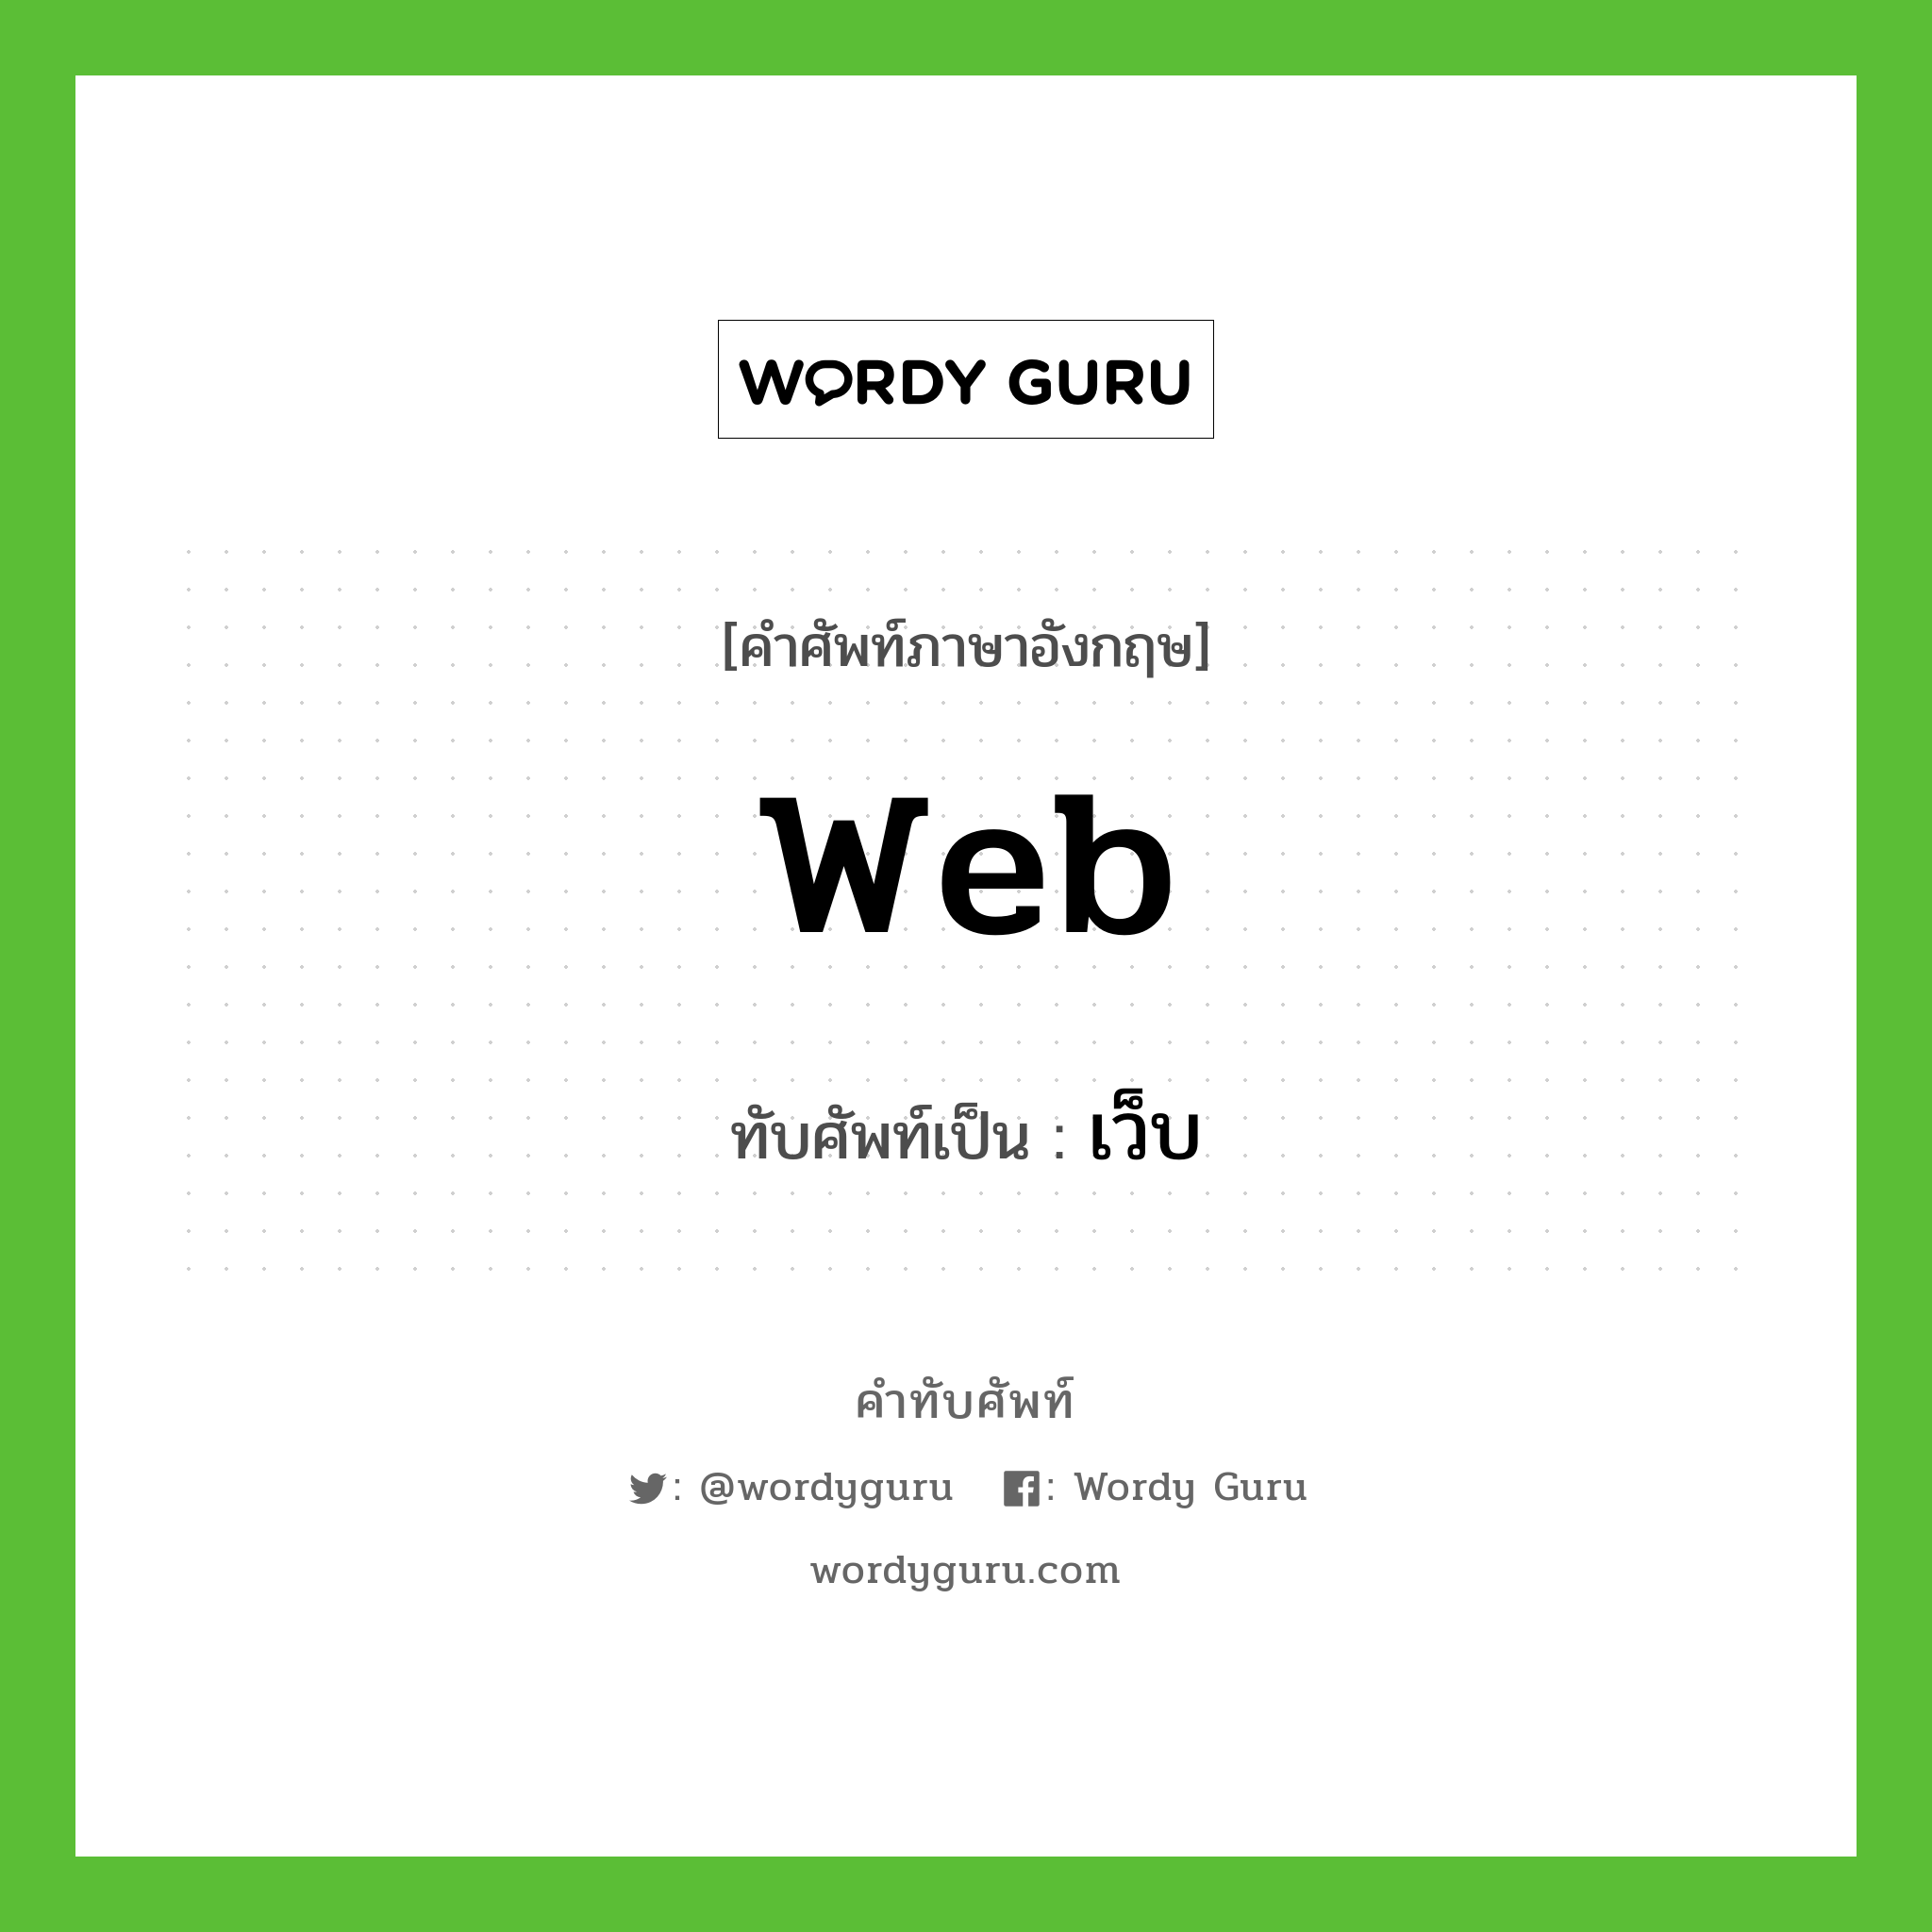 web เขียนเป็นคำไทยว่าอะไร?, คำศัพท์ภาษาอังกฤษ web ทับศัพท์เป็น เว็บ